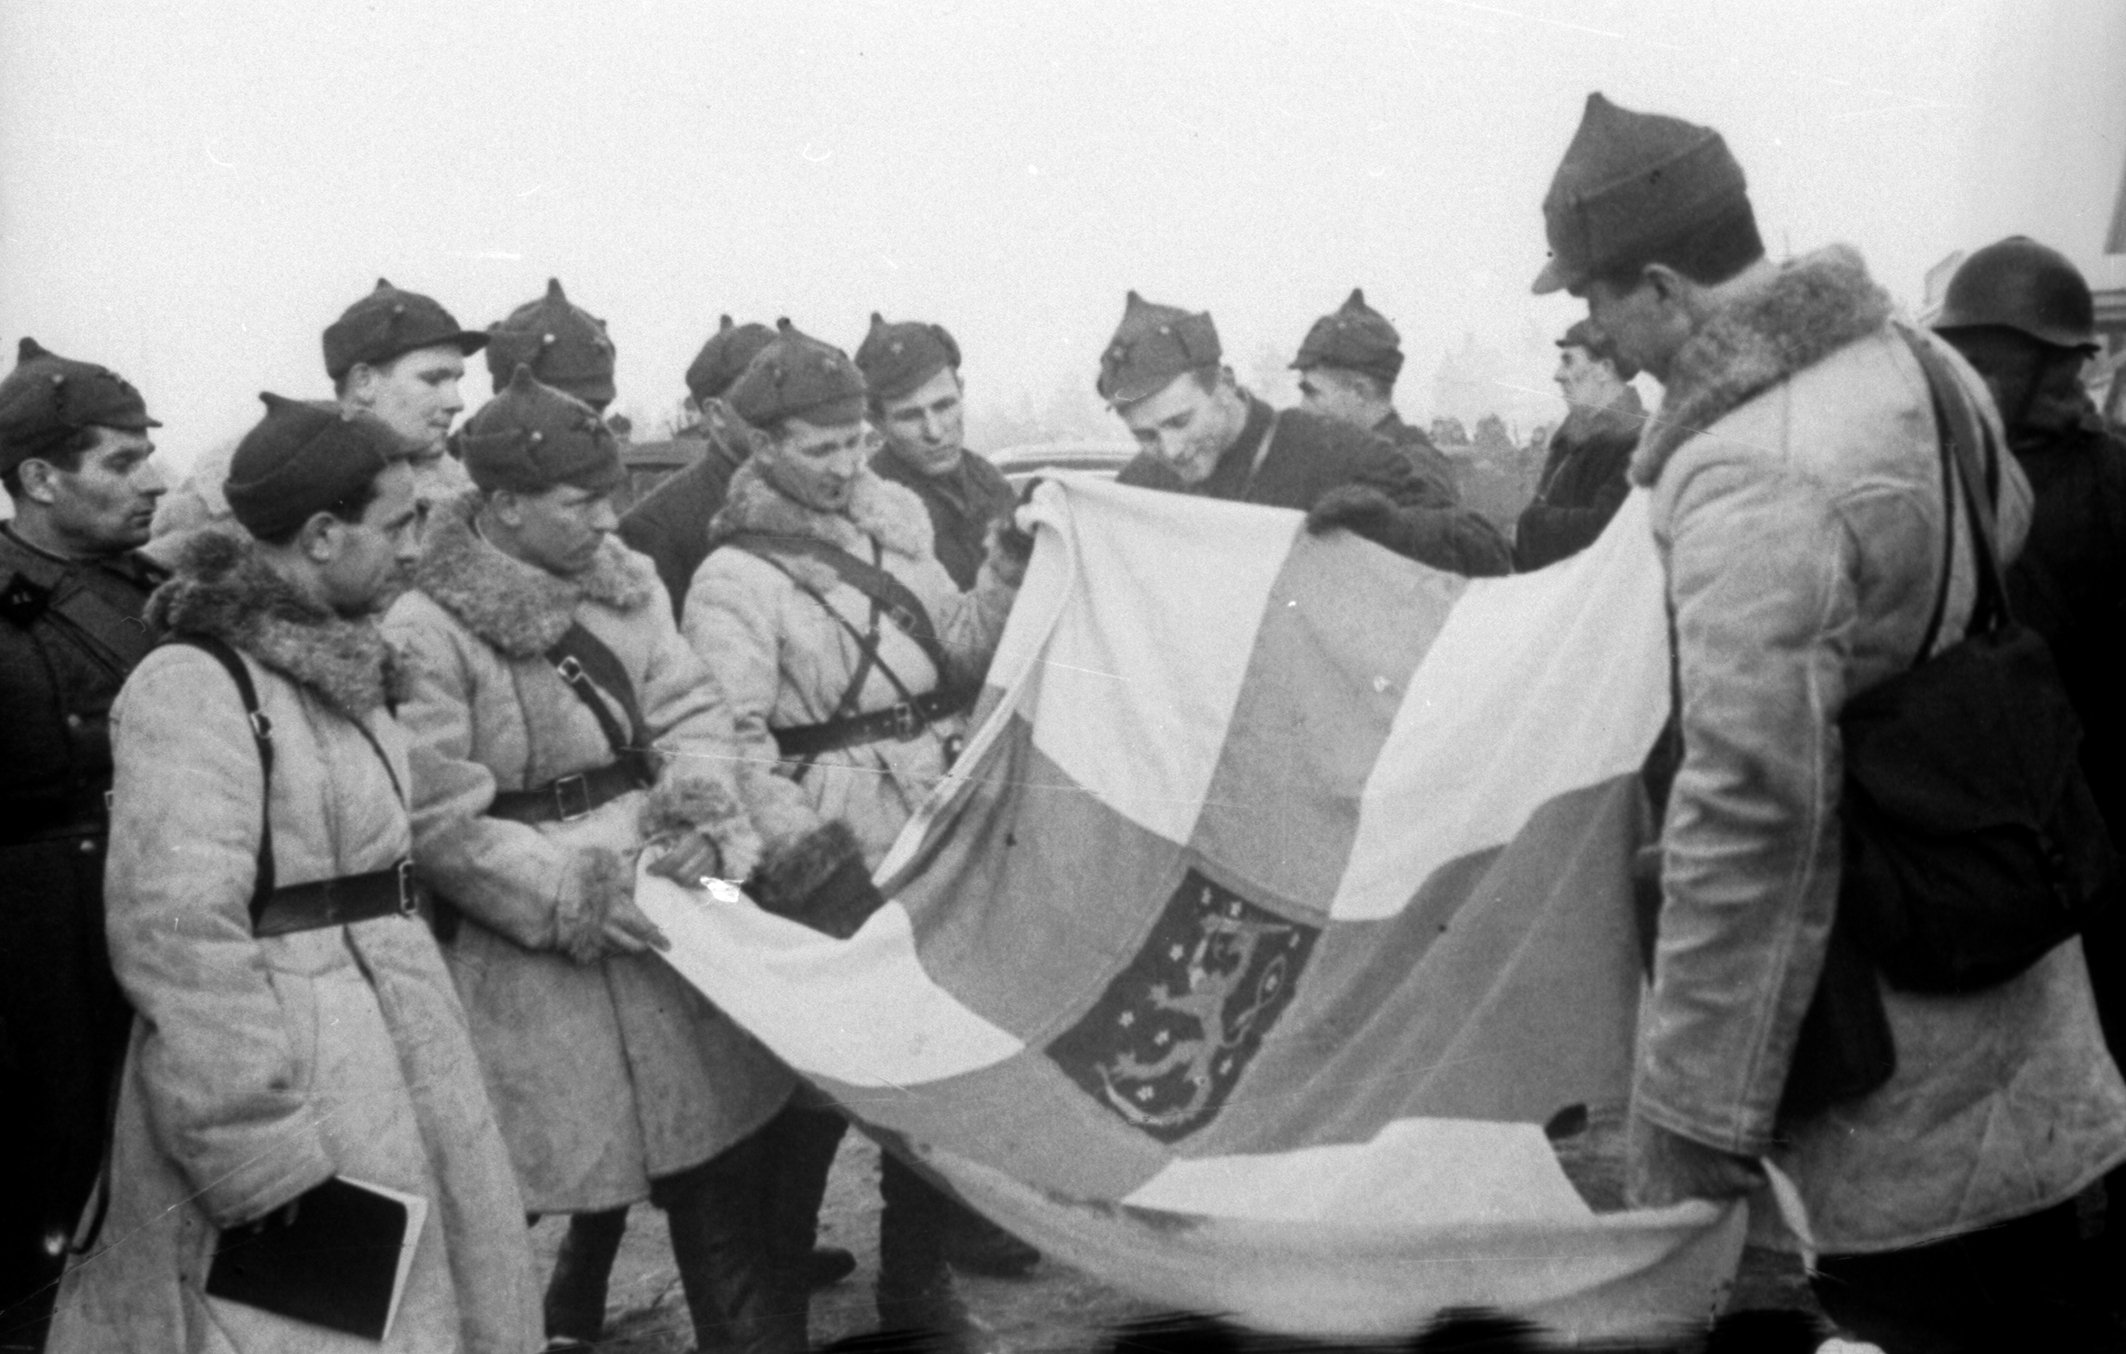 Дата к размышлению: 83 года назад был подписан договор о завершении советско-финской войны